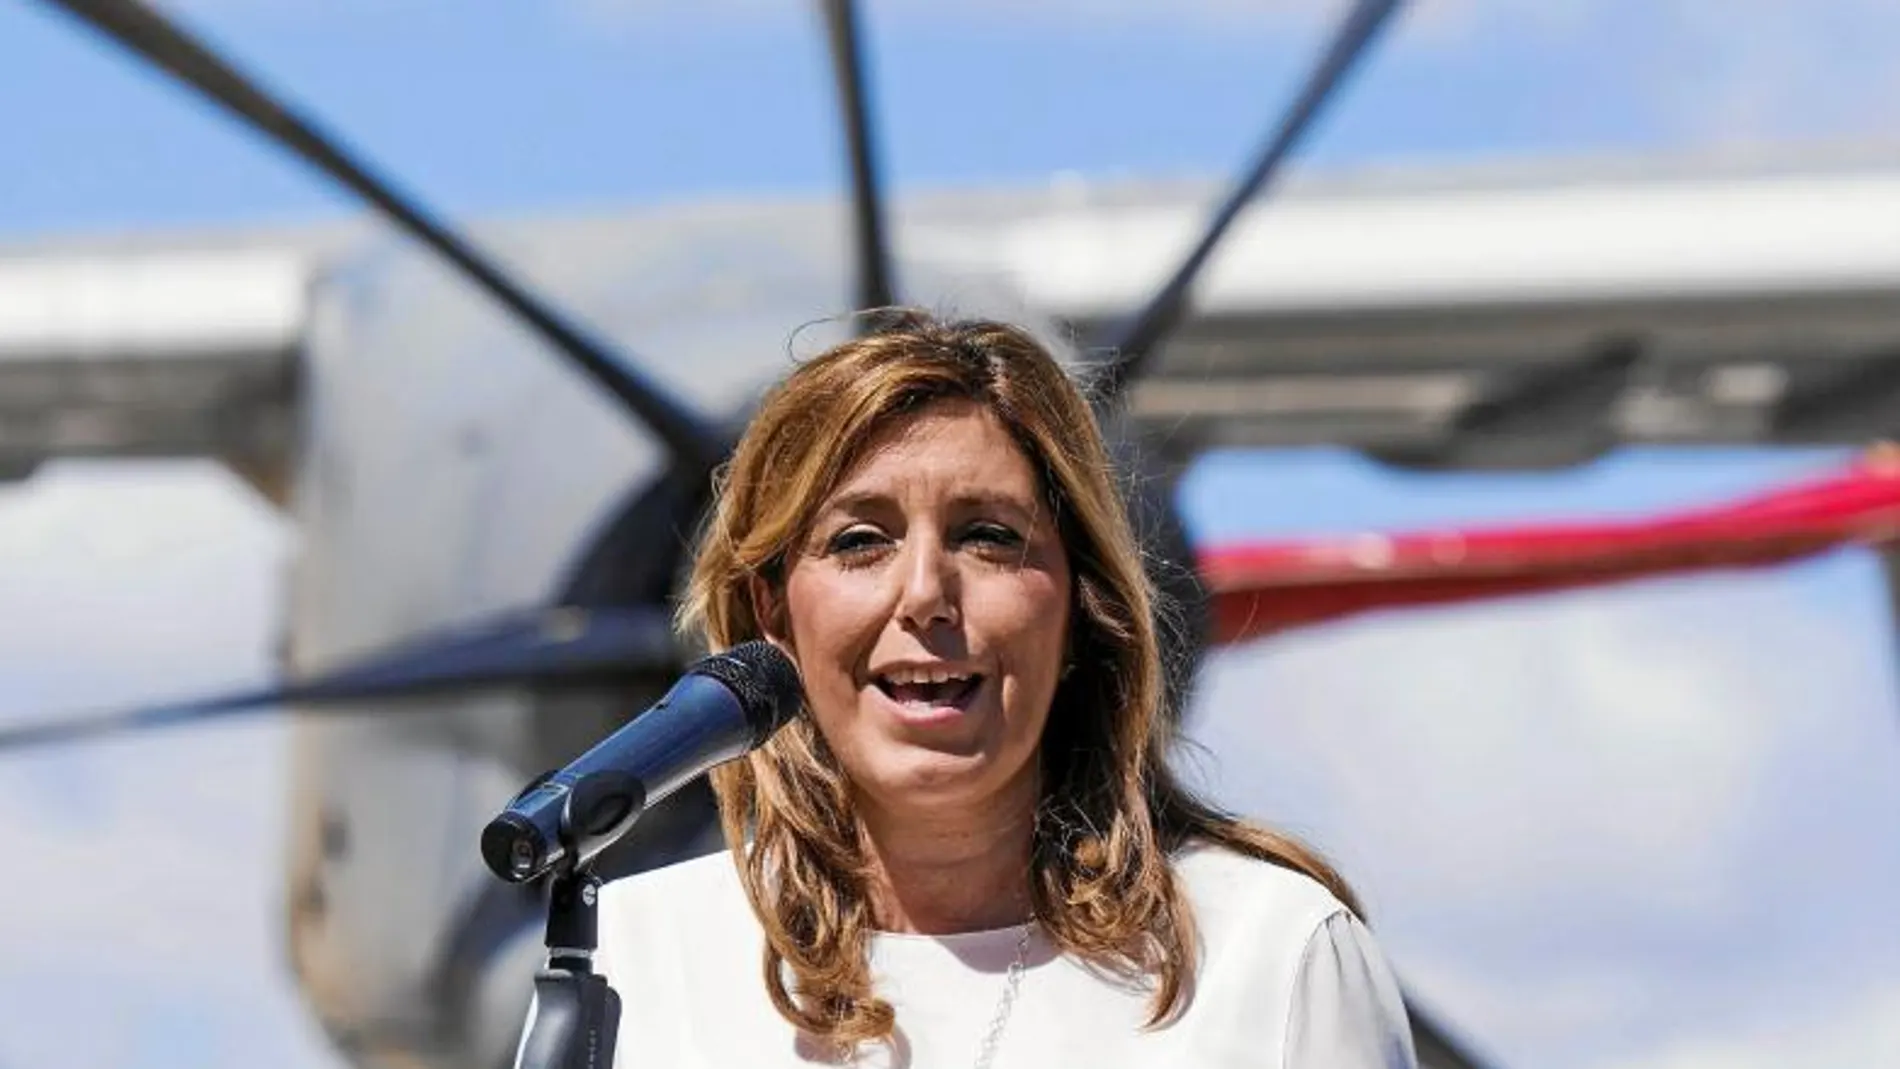 La presidenta de la Junta de Andalucía, Susana Díaz, ayer, en su primera aparición pública tras incorporarse de su baja maternal